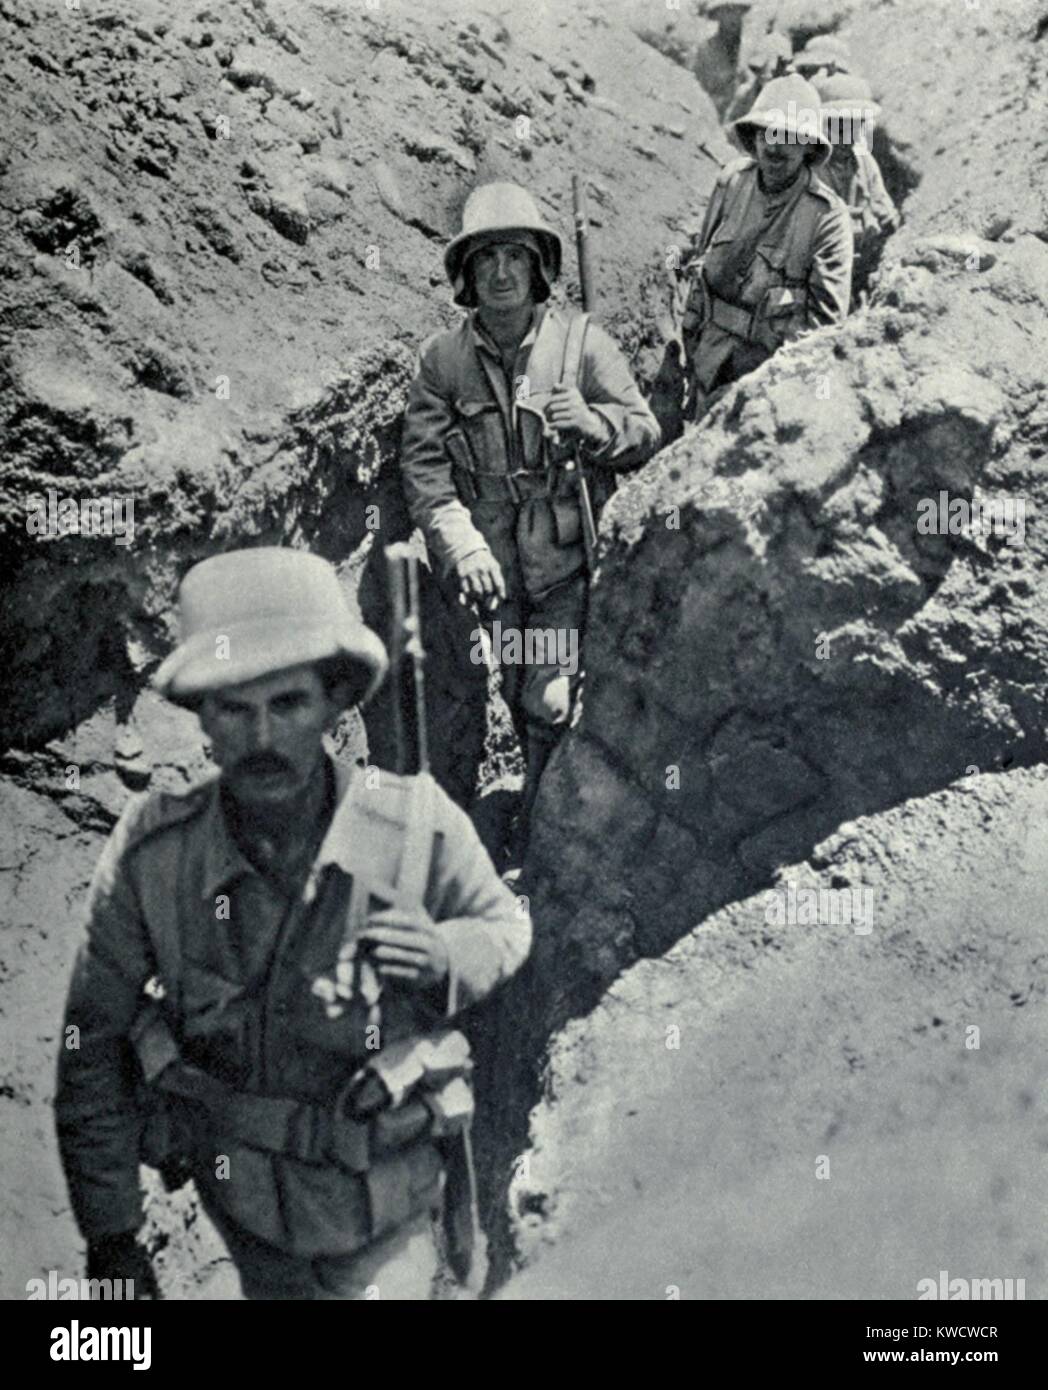 Weltkrieg 1 im Nahen Osten. Britische Truppen Einreichung durch eine Mitteilung Graben zwischen dem Feuer und Gräben. Sie sind möglicherweise an Kut-al-Amara, wo 10.000 Britische Truppen an die Türken am 29. April 1916 abgegeben. (BSLOC 2013 1 77) Stockfoto